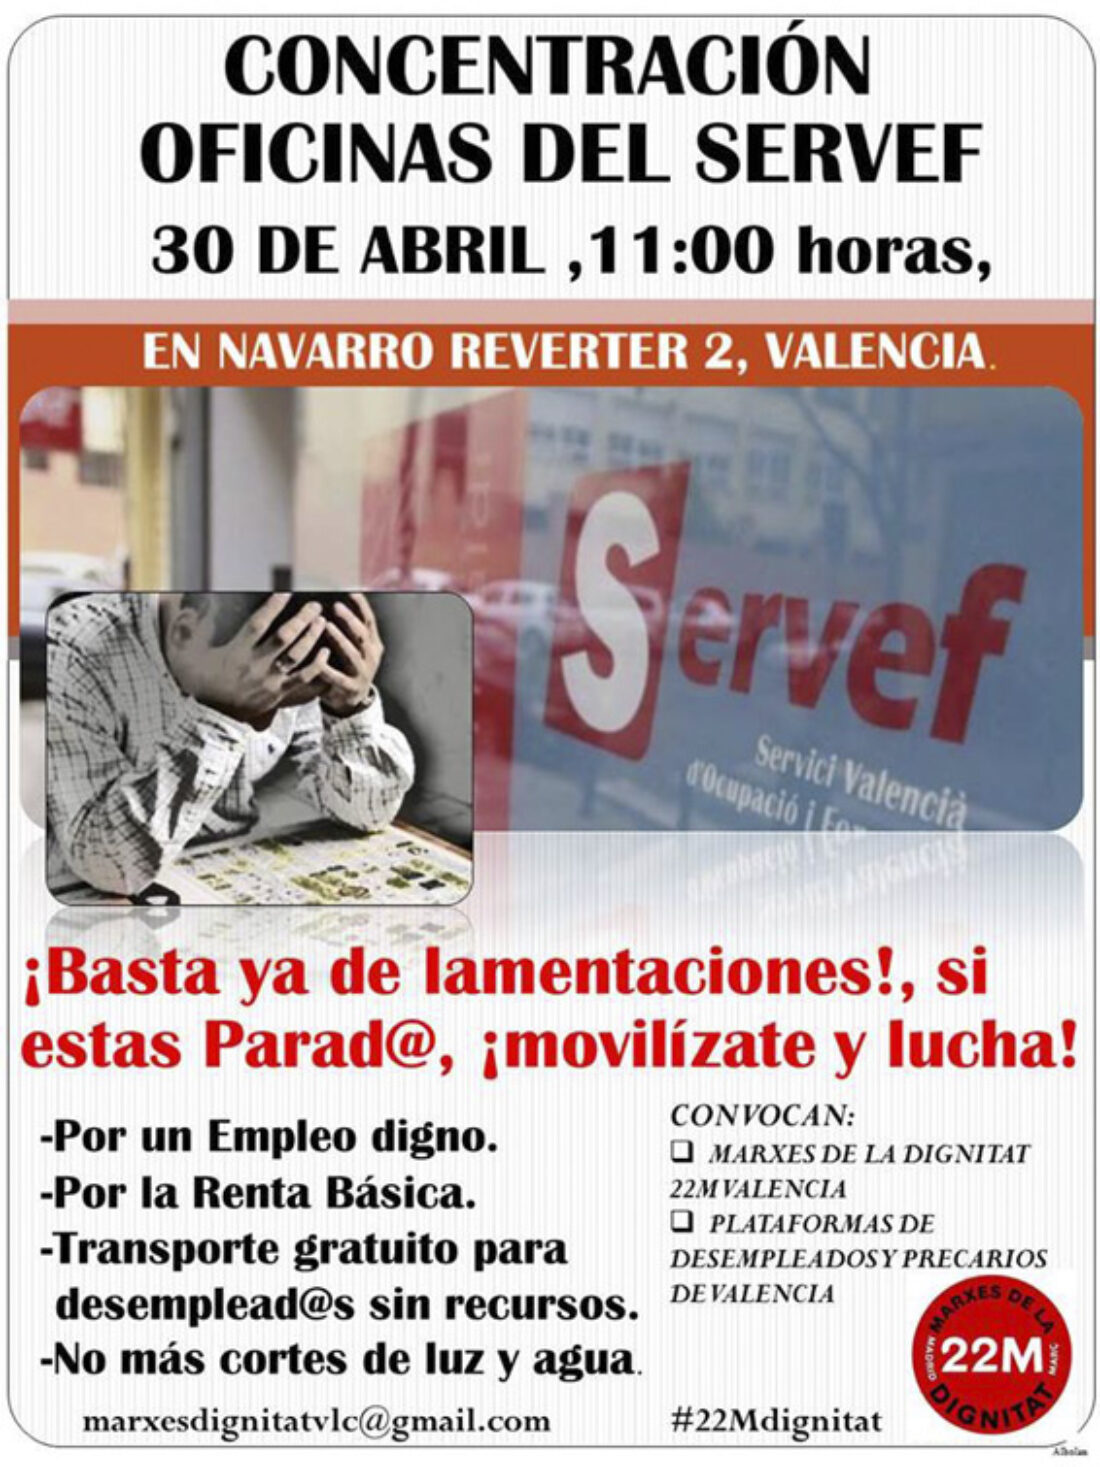 30-a Valencia: Concentración Oficinas del Servef